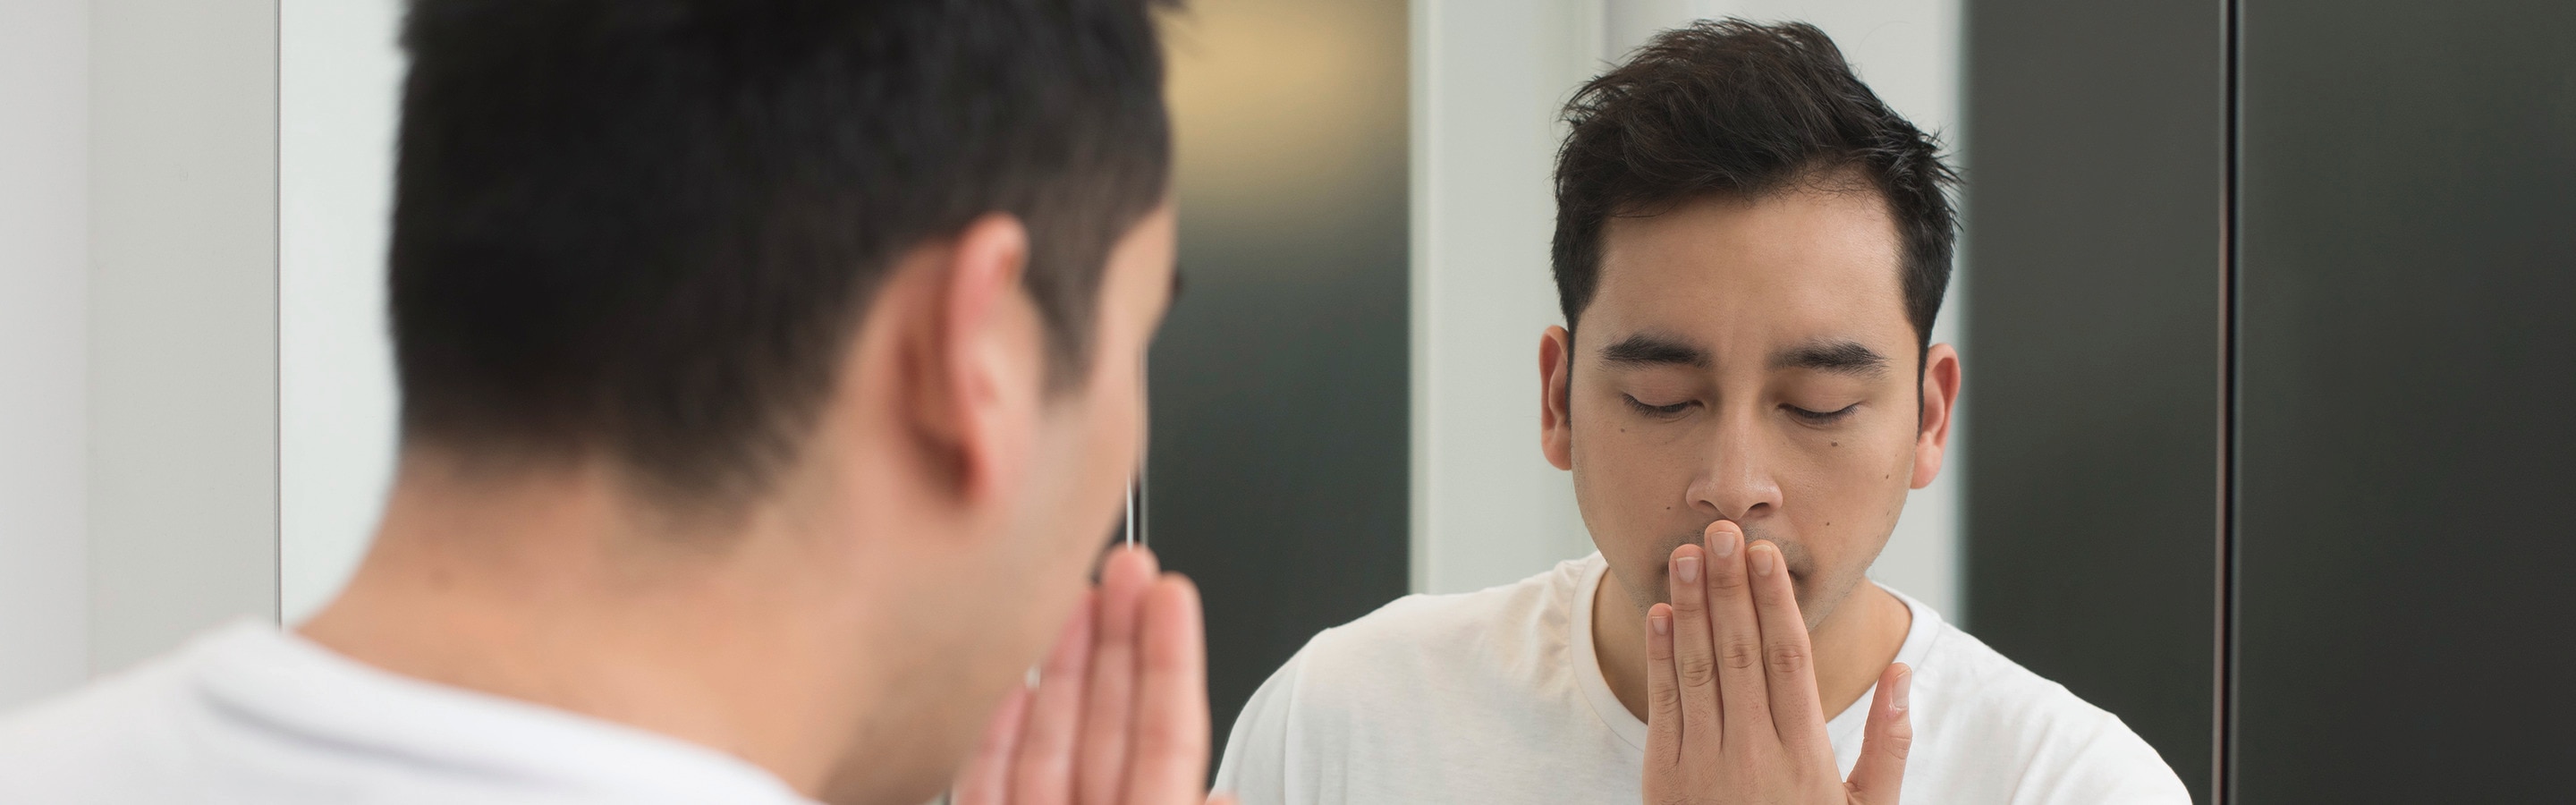 Πέντε μύθοι για την κακοσμία του στόματος